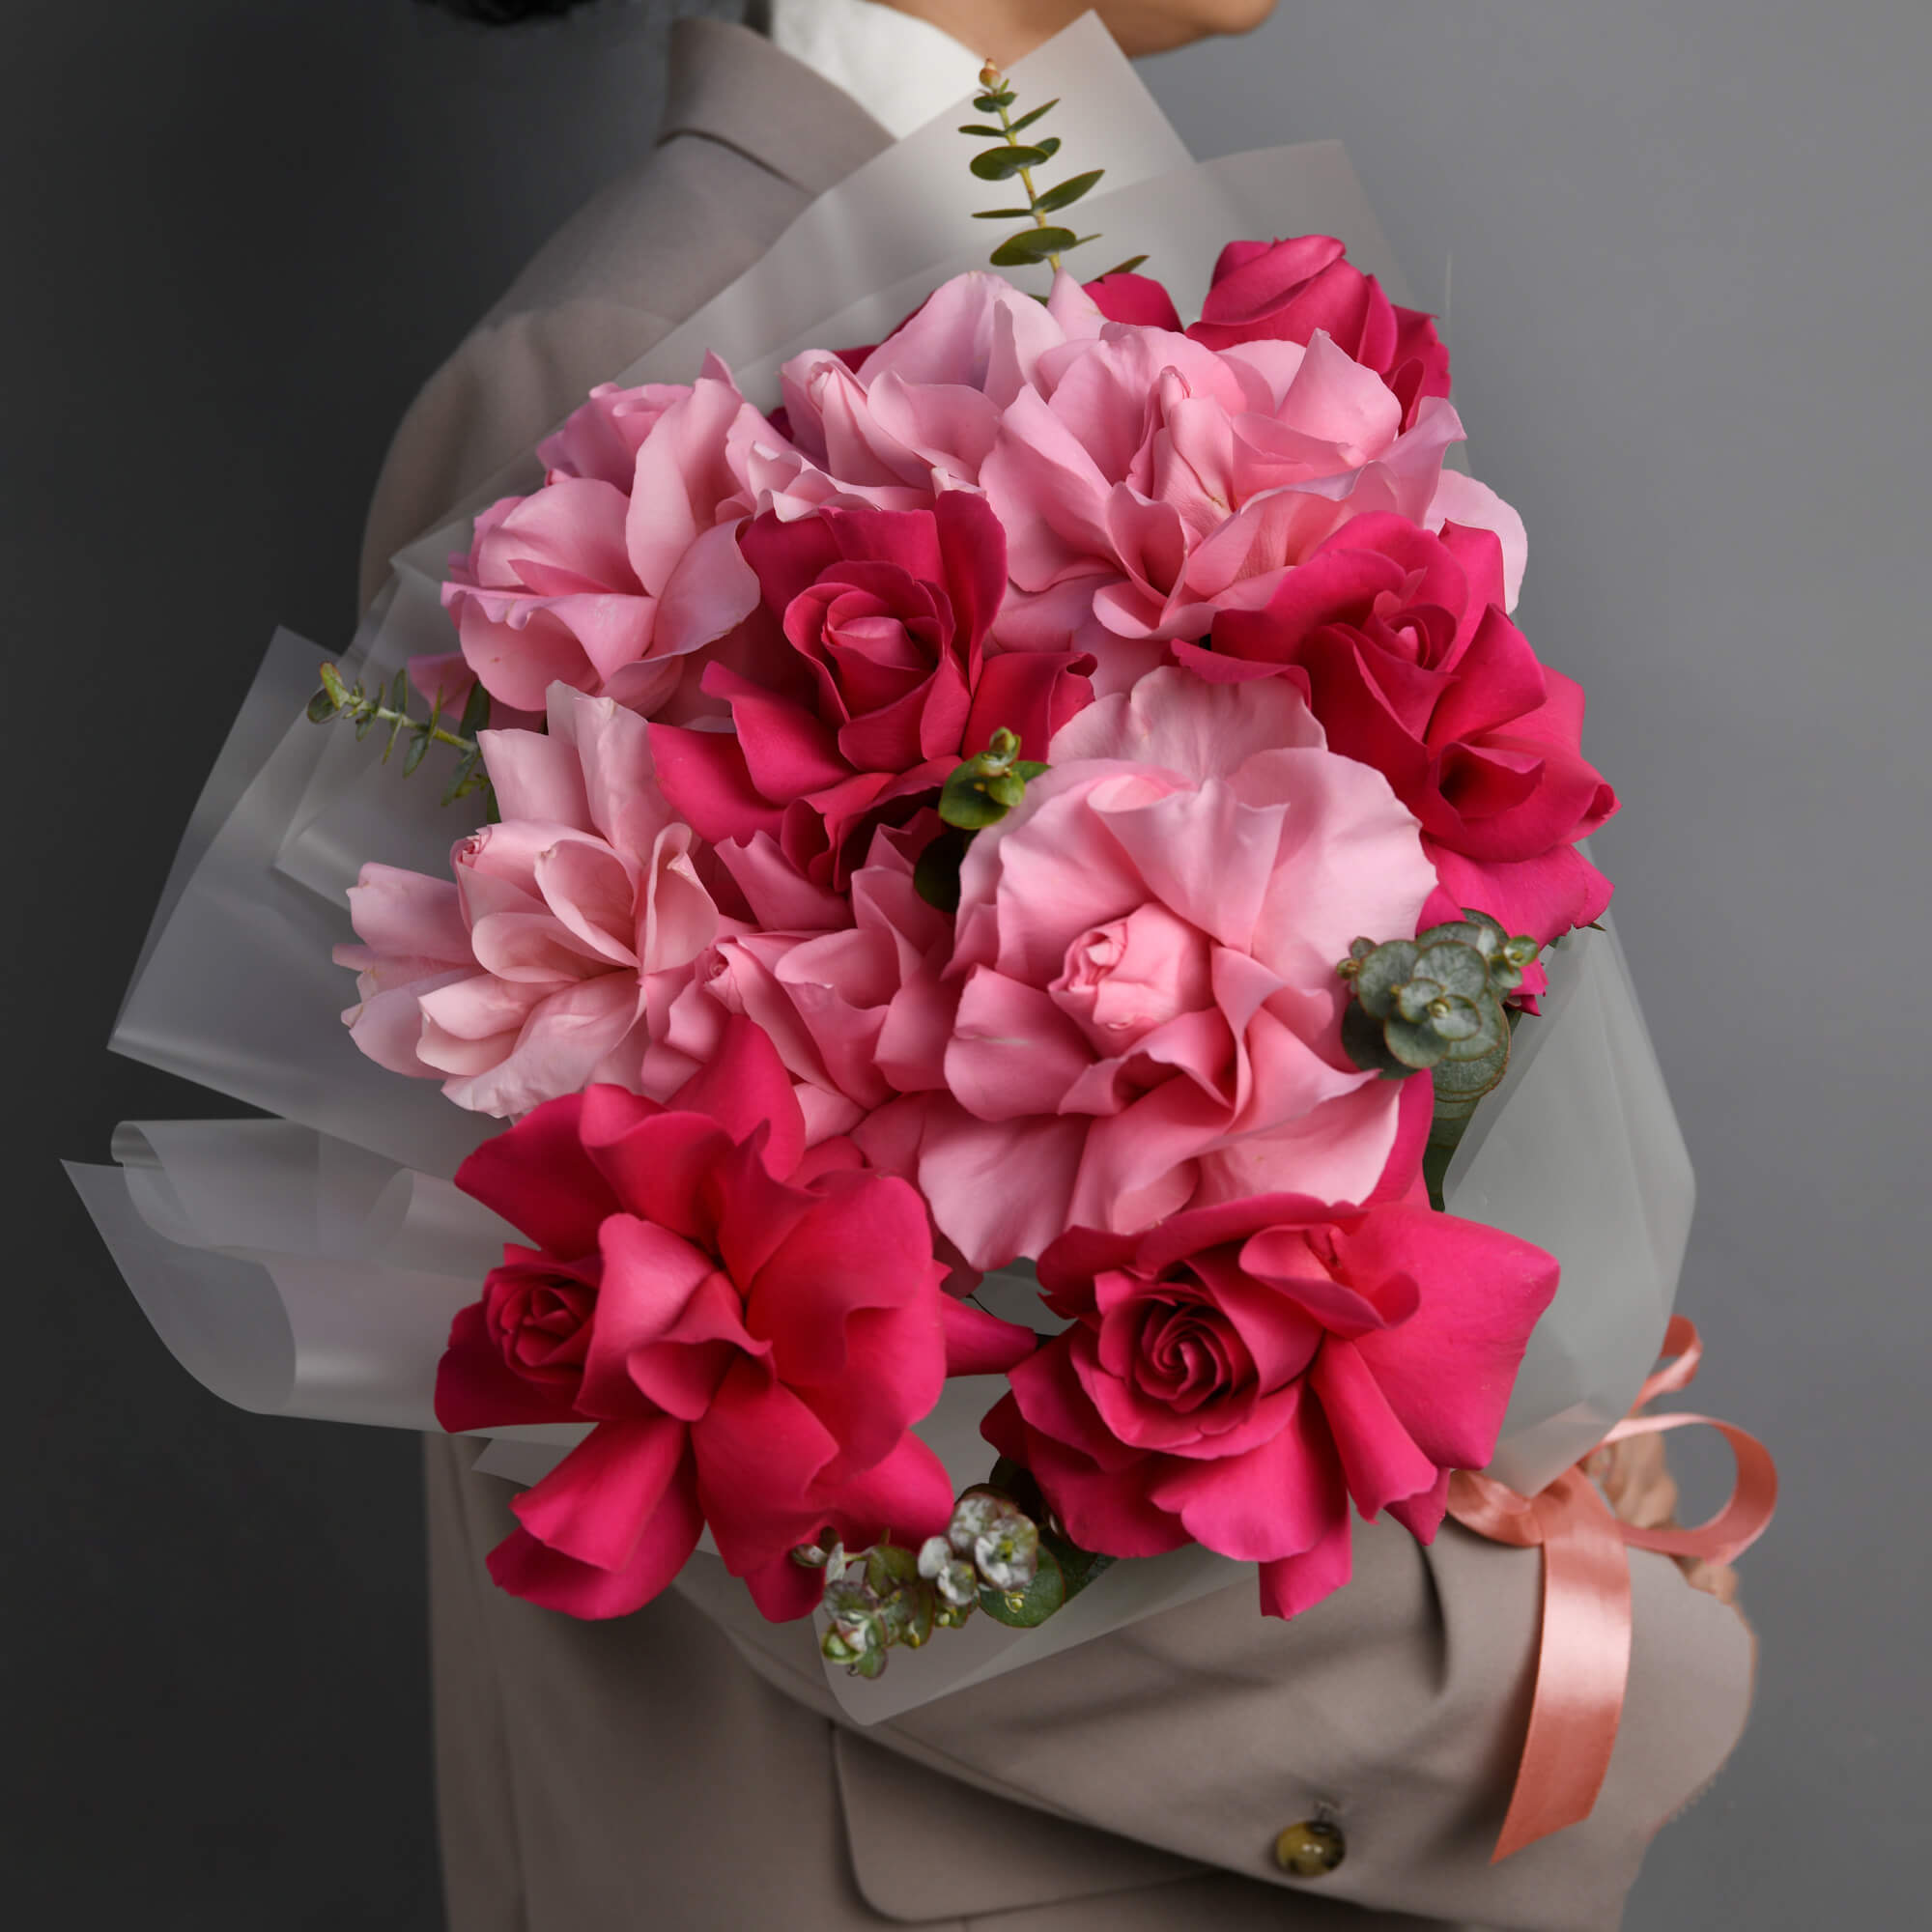 Buchet cu trandafiri speciali roz multicolori, 3